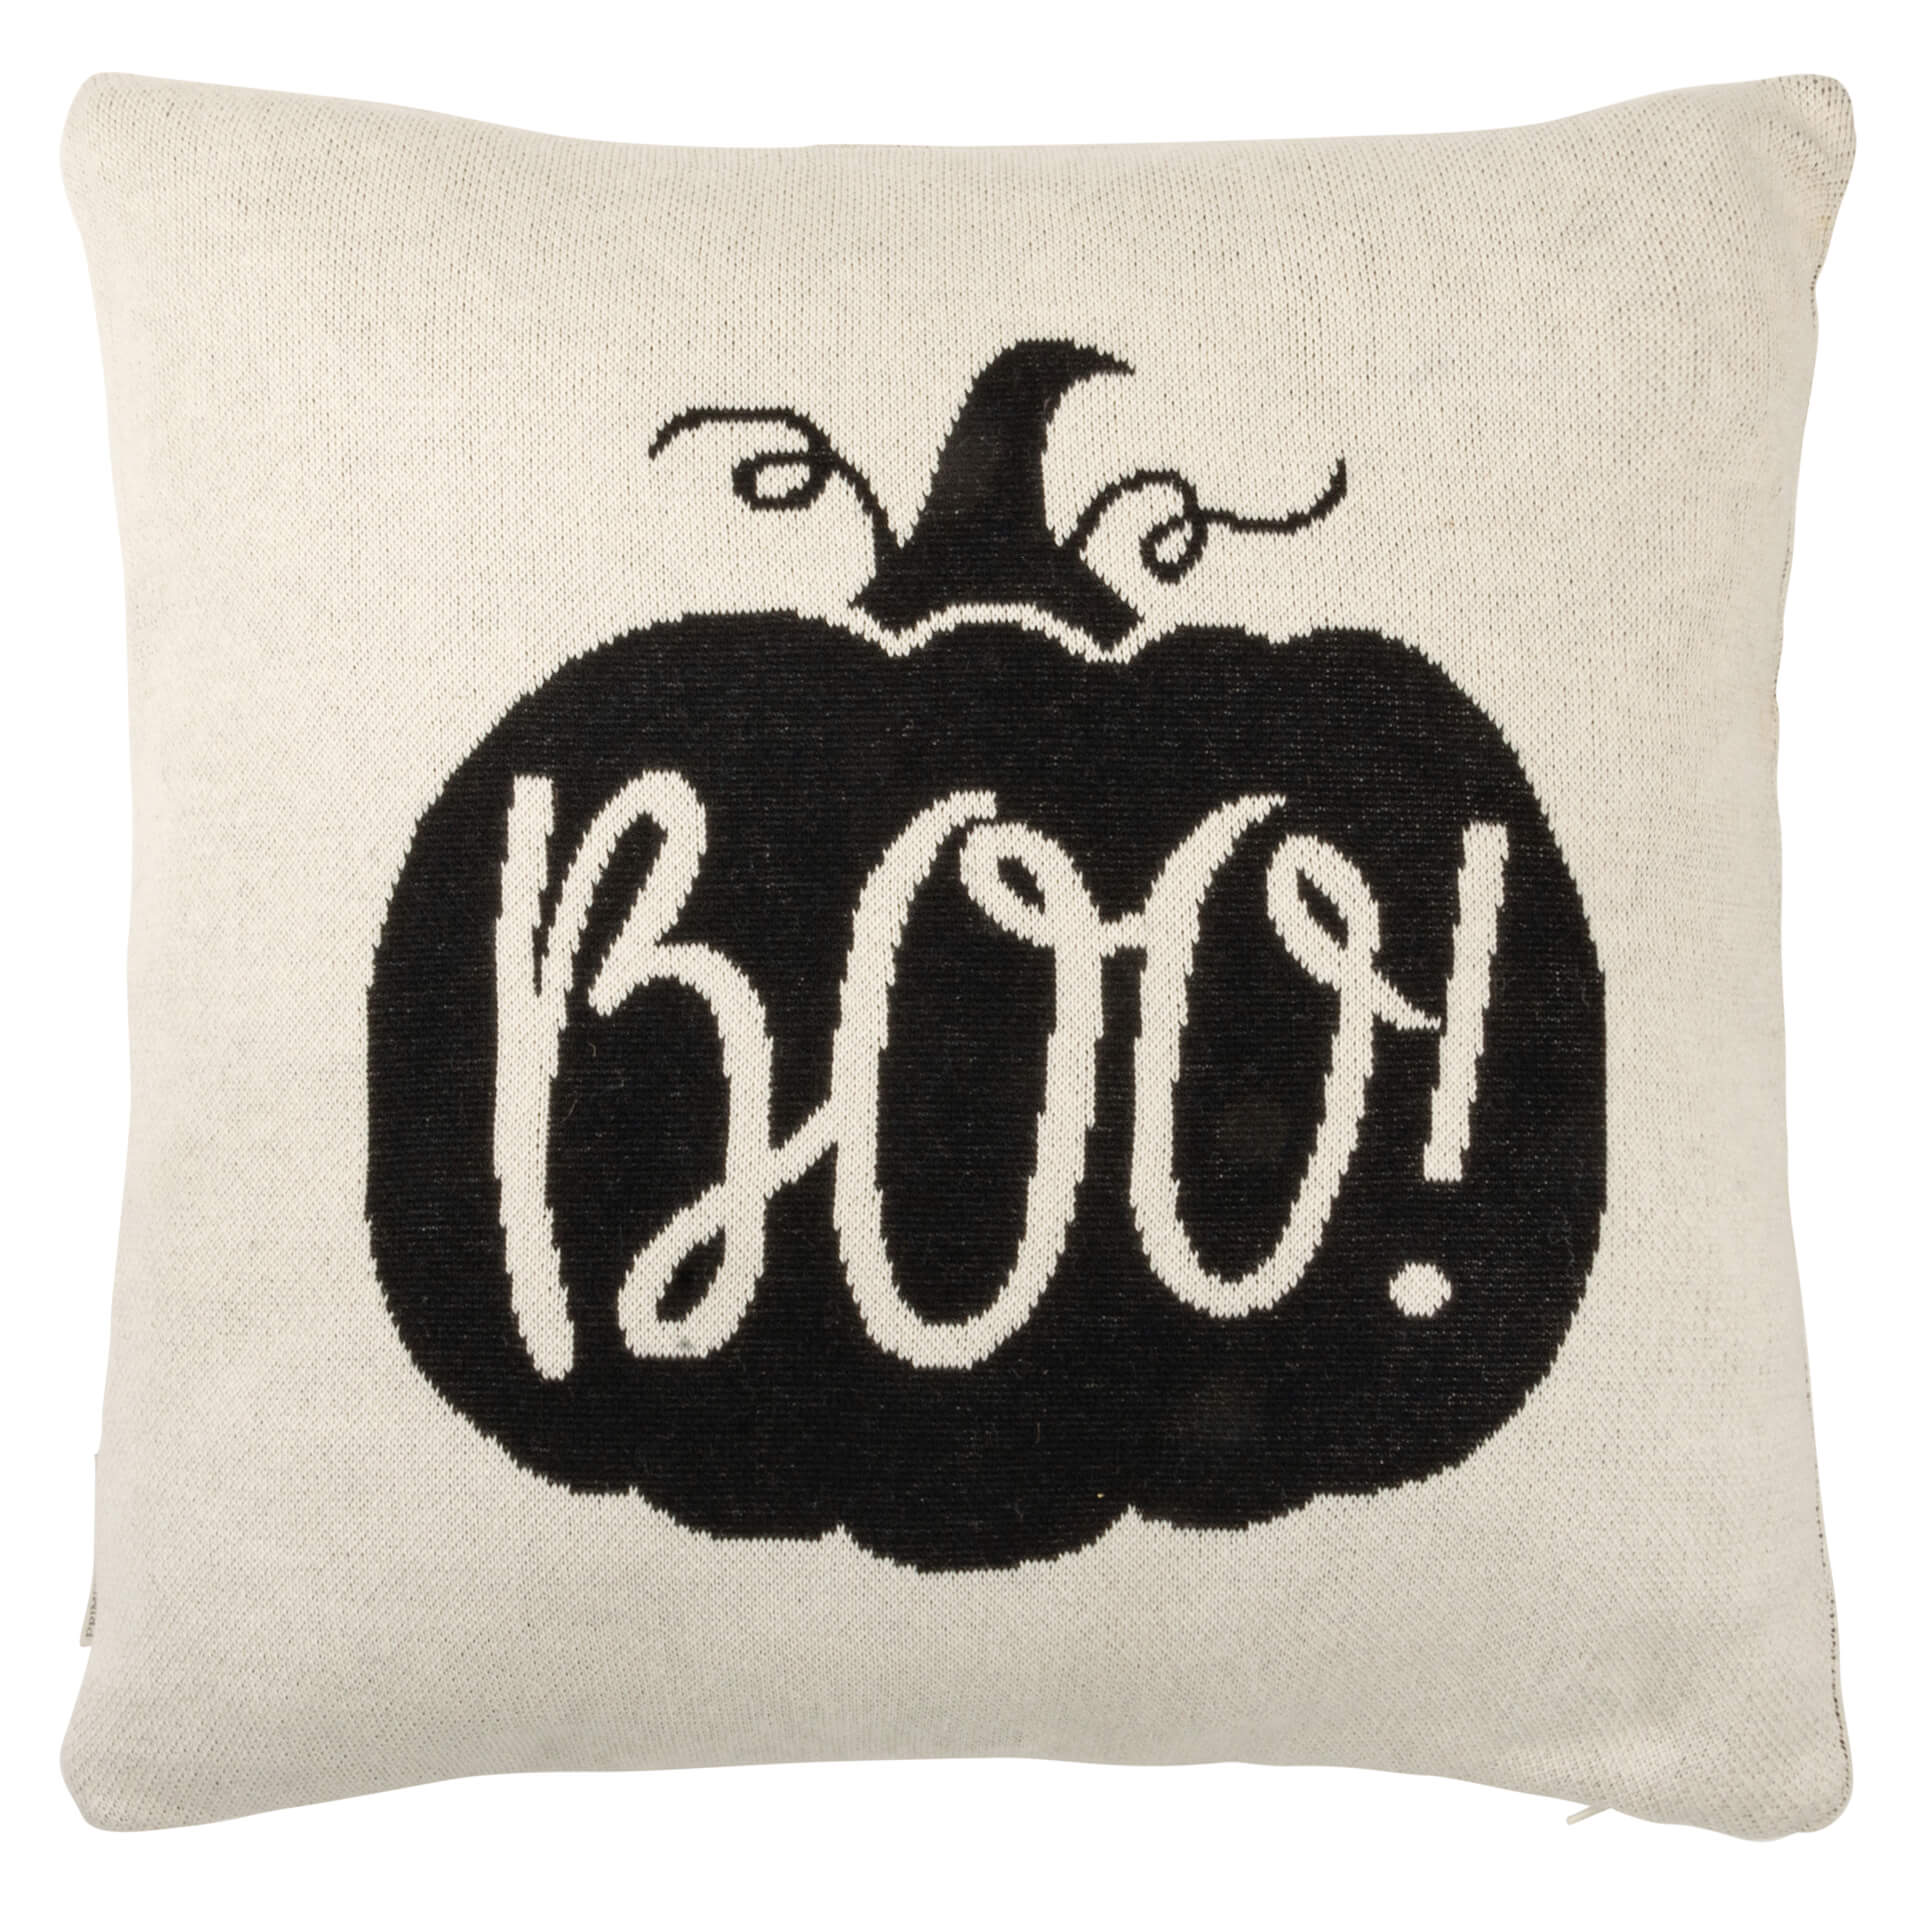 Boo Pumpkin Pillow